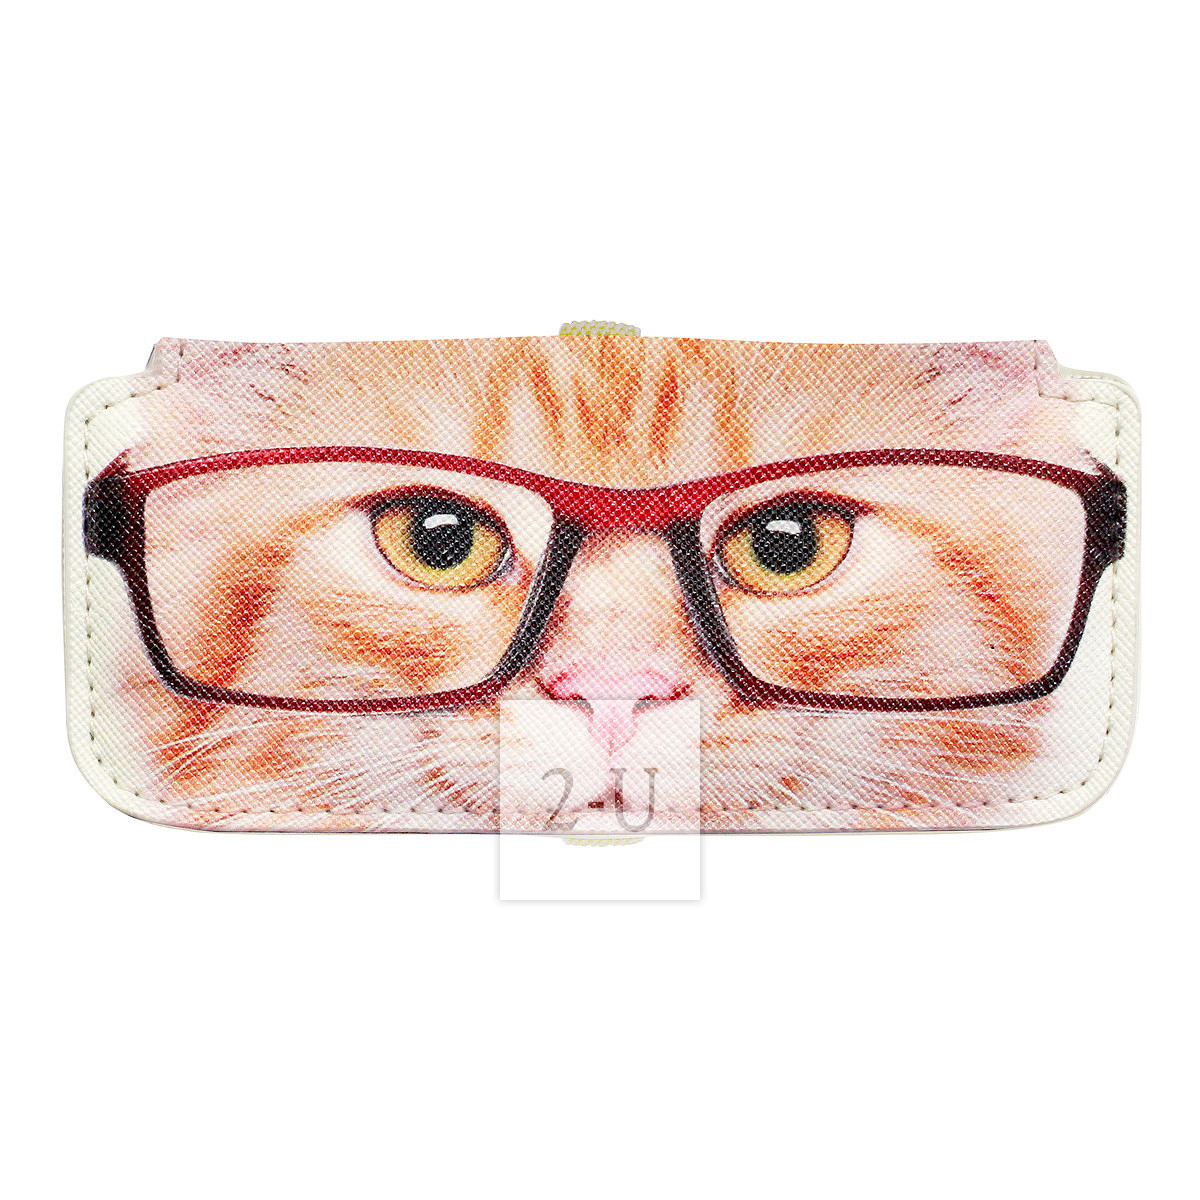 小巧眼鏡盒 動物圖案之金漸層虎斑貓